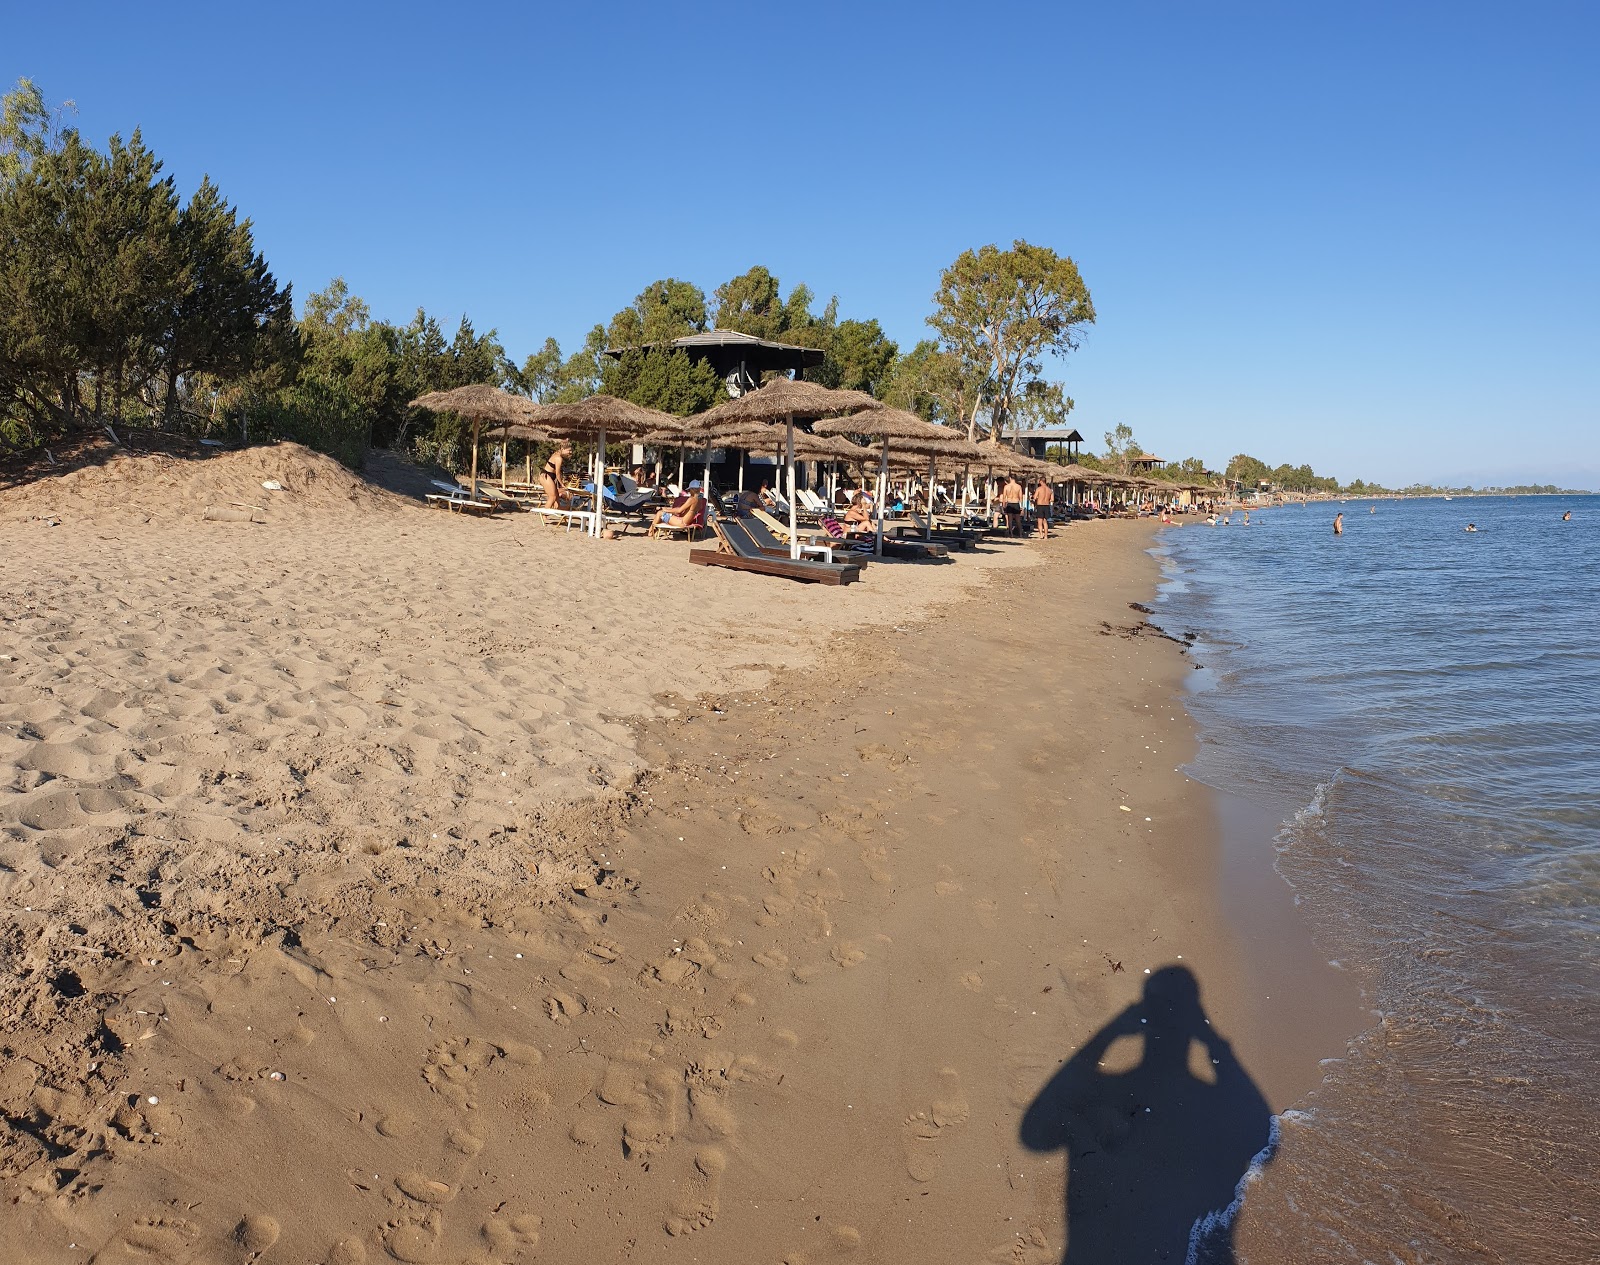 Photo de Louros beach - endroit populaire parmi les connaisseurs de la détente